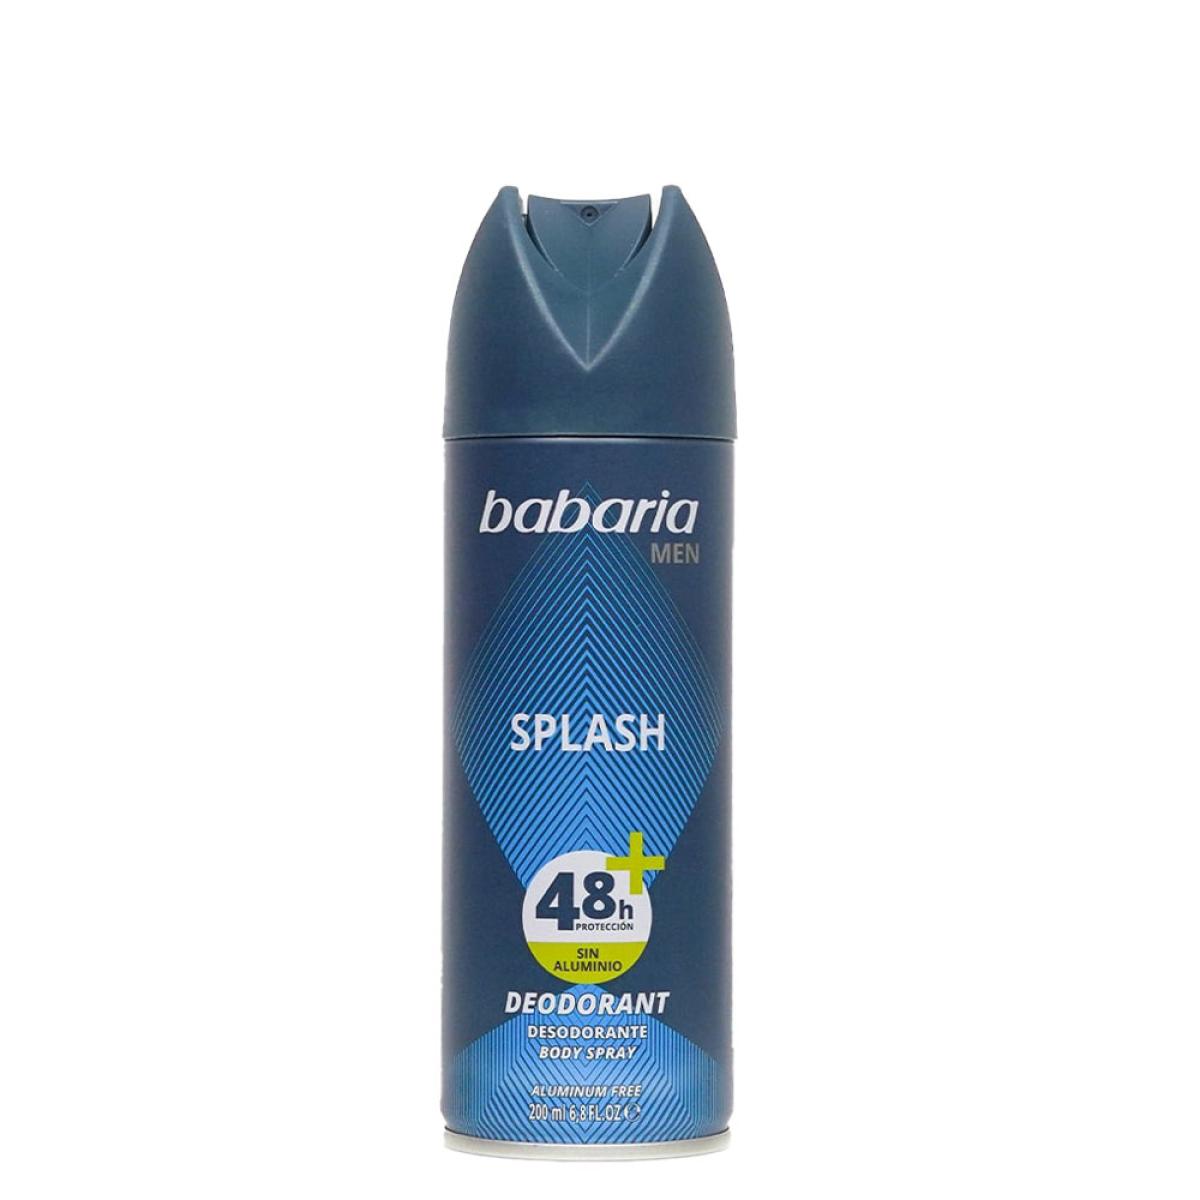  اسپری دئودورانت مردانه Splash  -  Splash Deodorant Spray